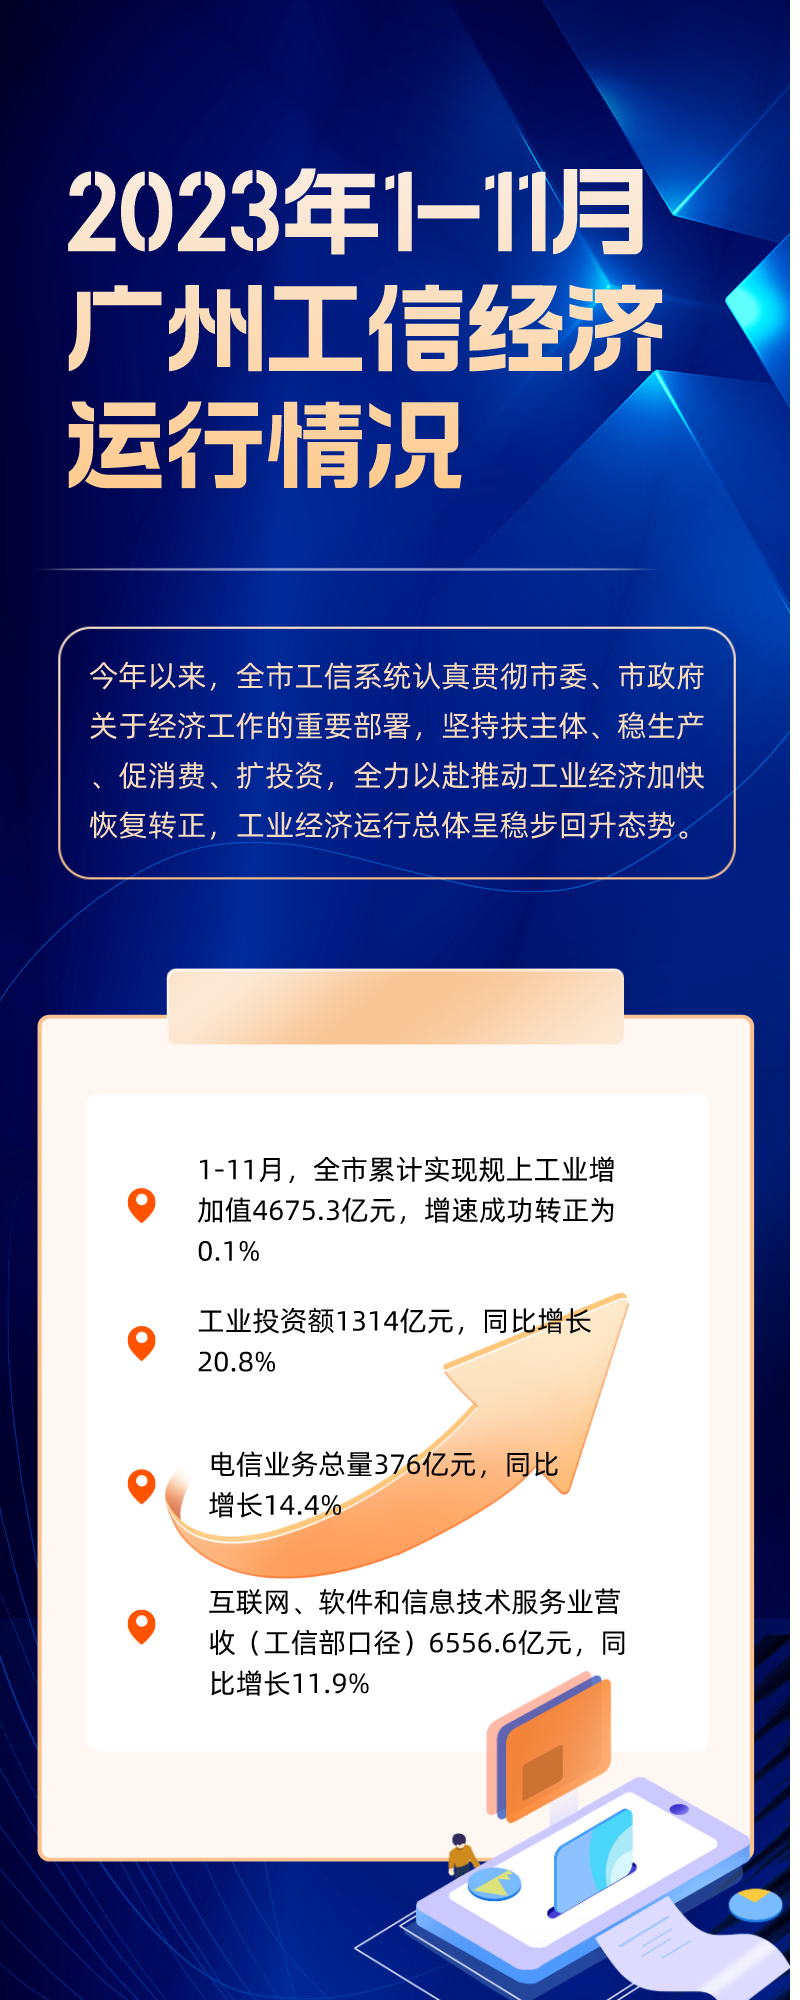 2023年1-11月广州工信经济运行情况.png